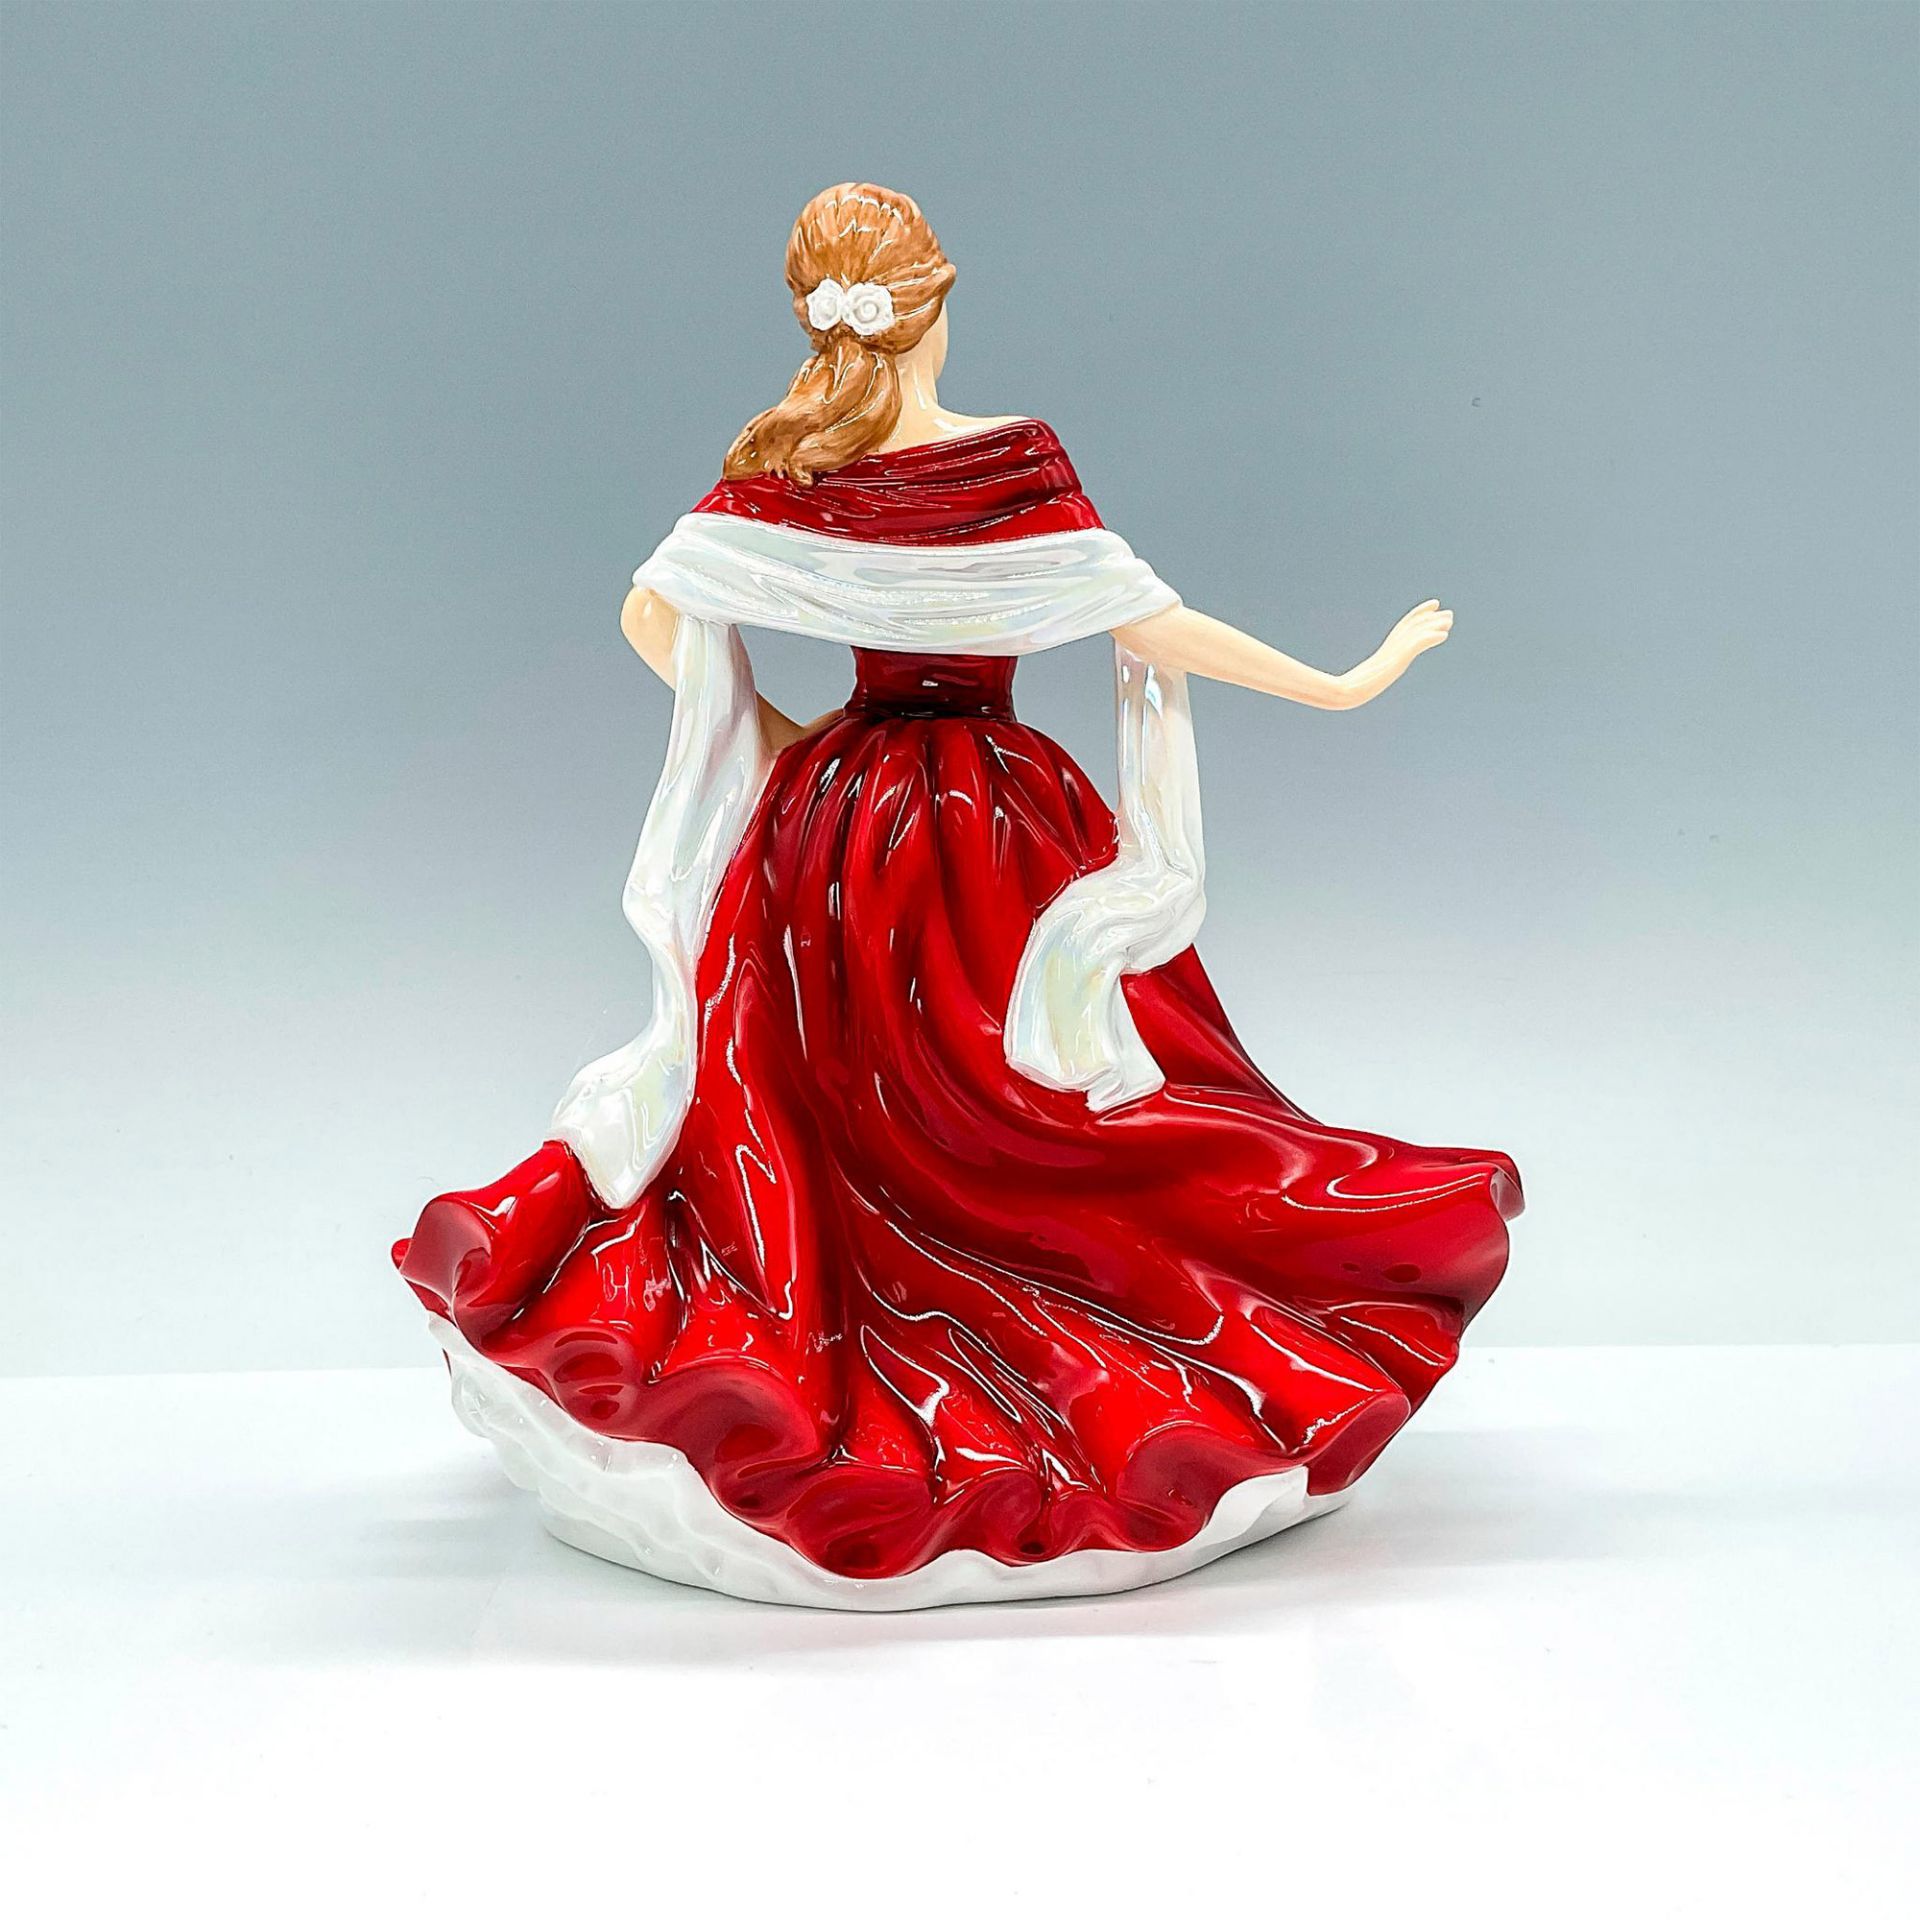 Scarlett - HN5437 - Royal Doulton Figurine Full Size - Image 2 of 3